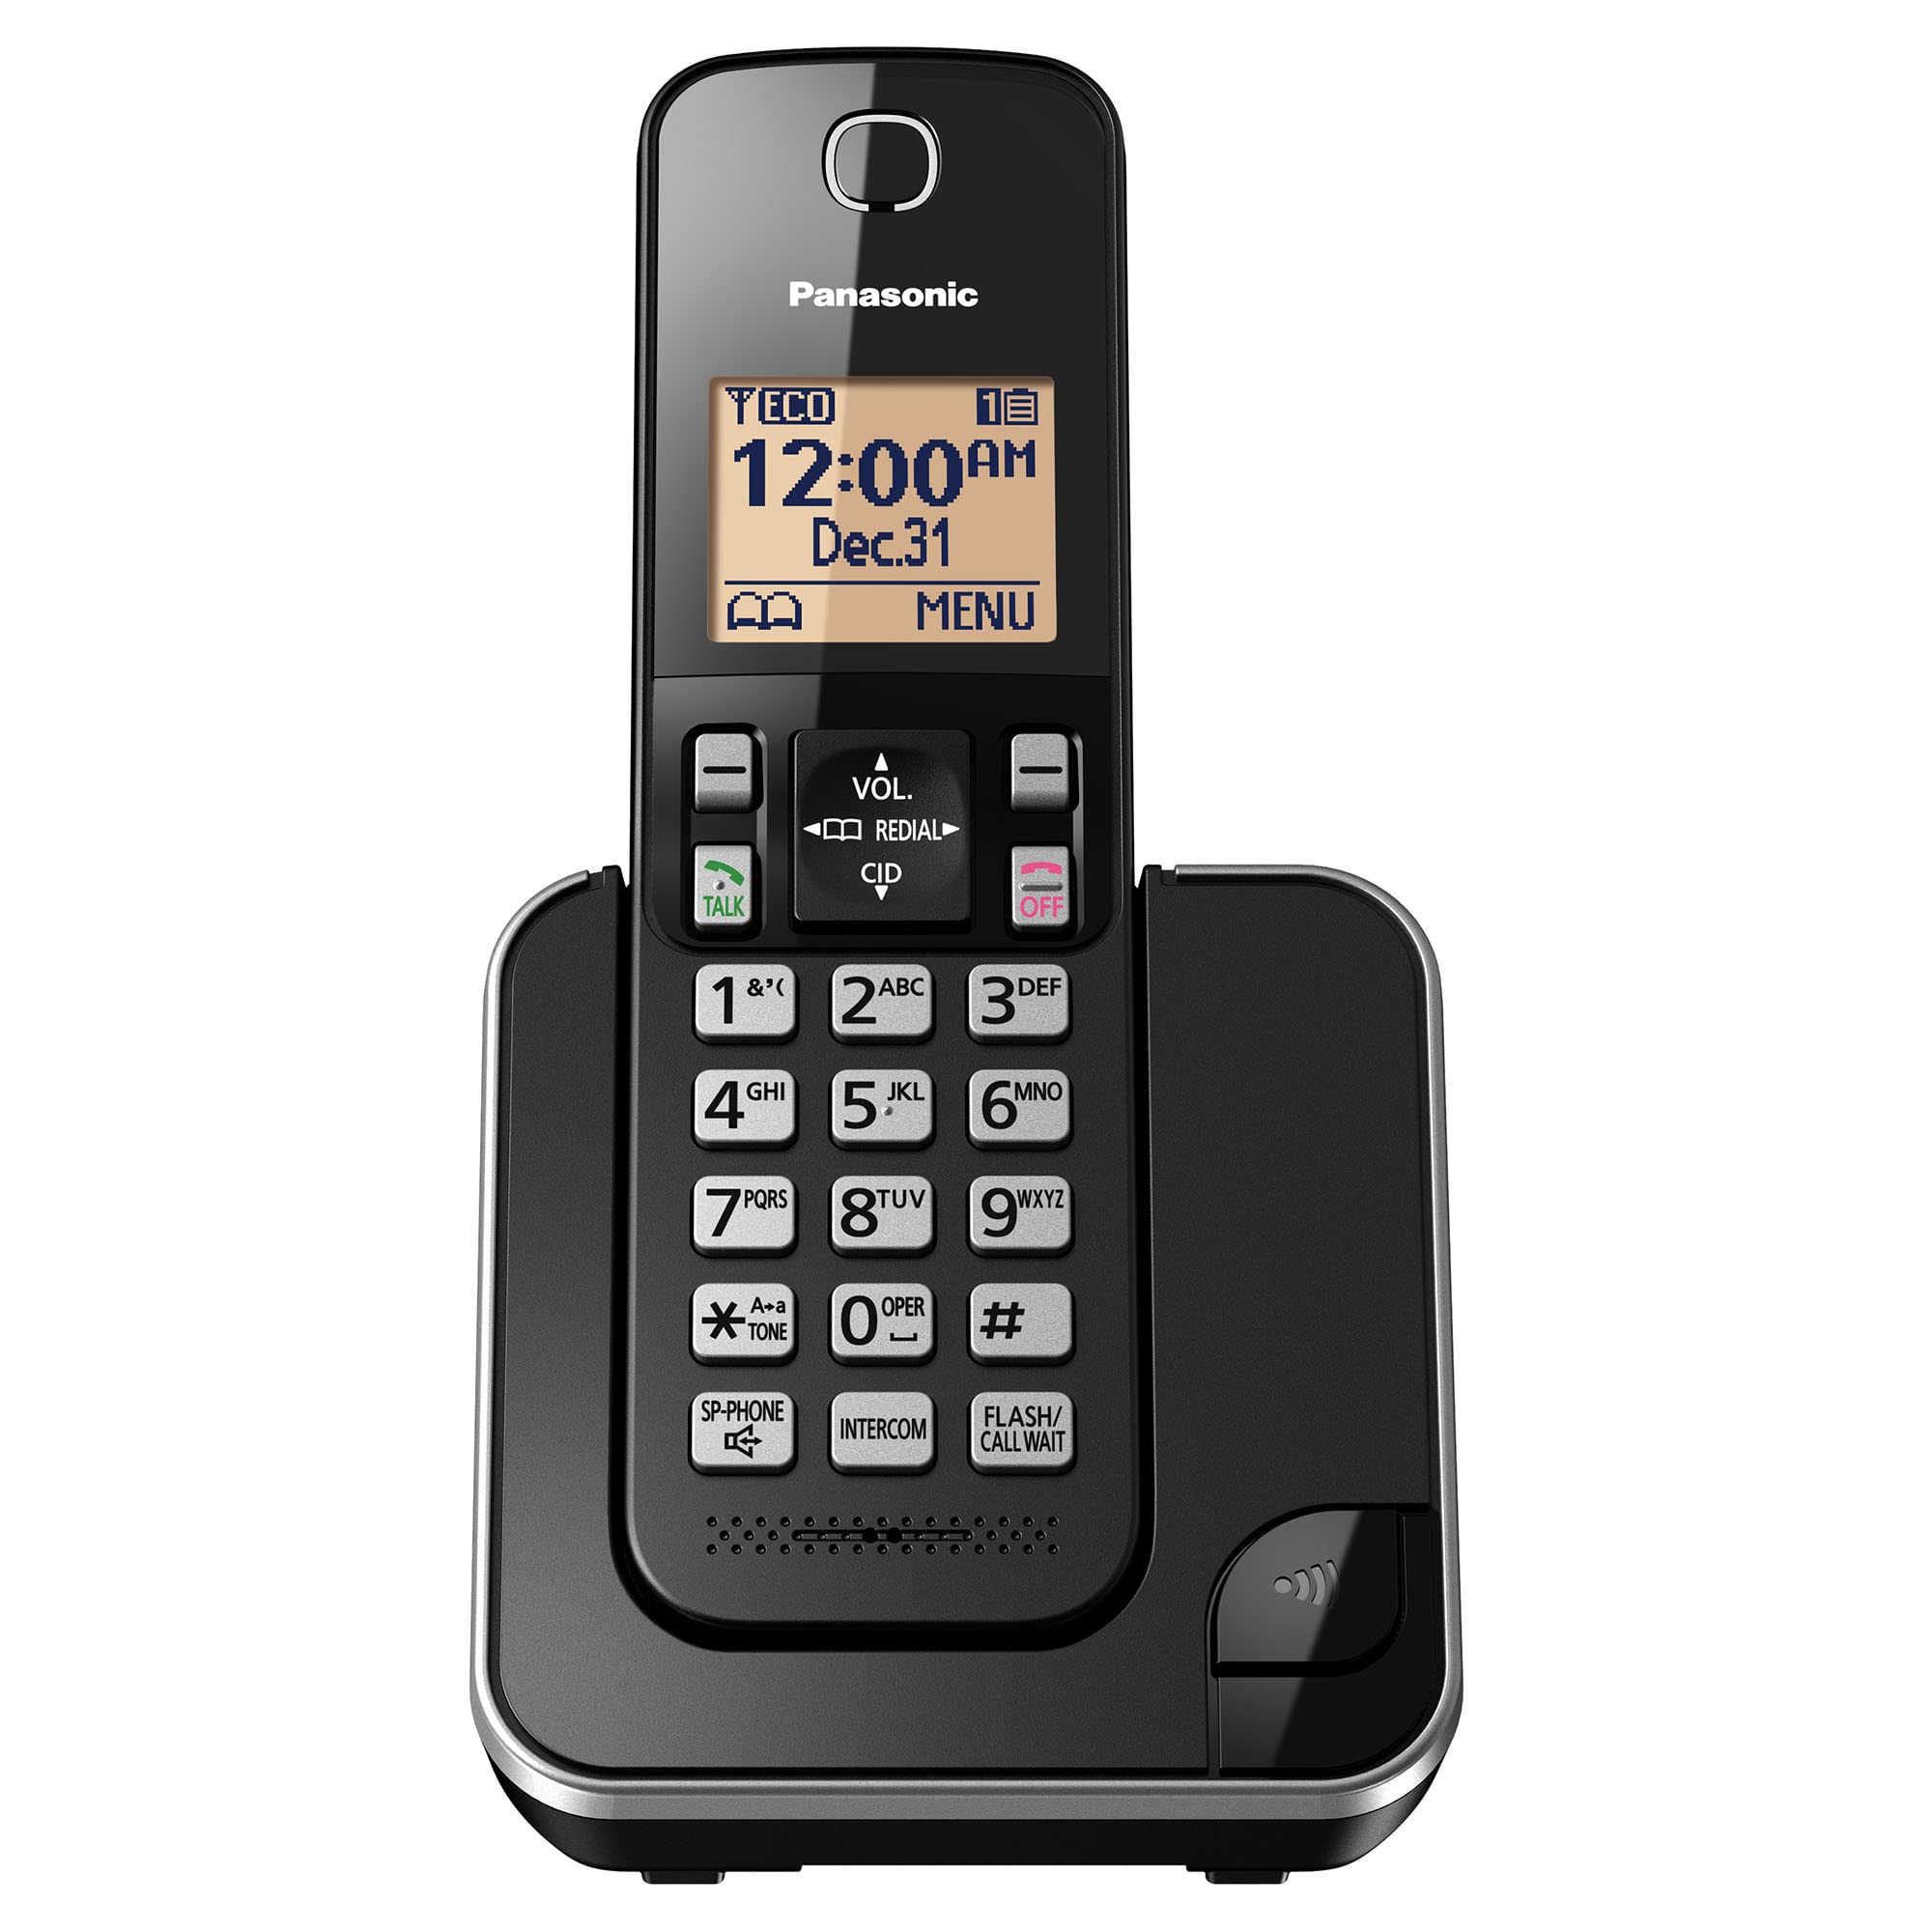 Panasonic オレンジ色のバックライト付きディスプレイとコールブロックを備えた拡張可能なコードレス電話システム